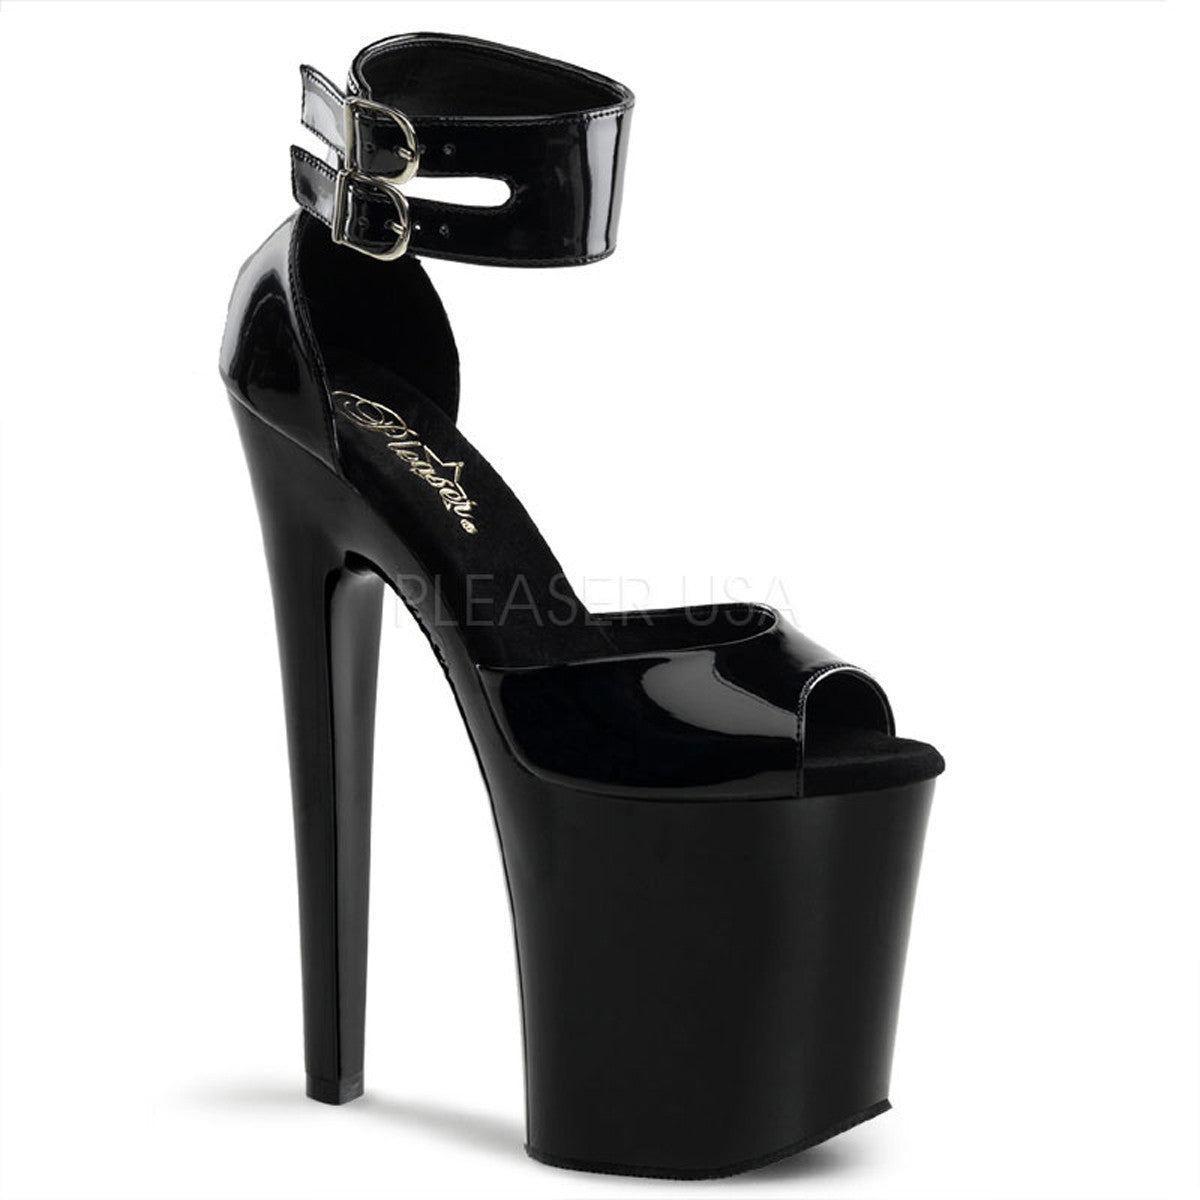 PLEASER XTREME-875 Black Pat Platform Sandals | Shoecup.com